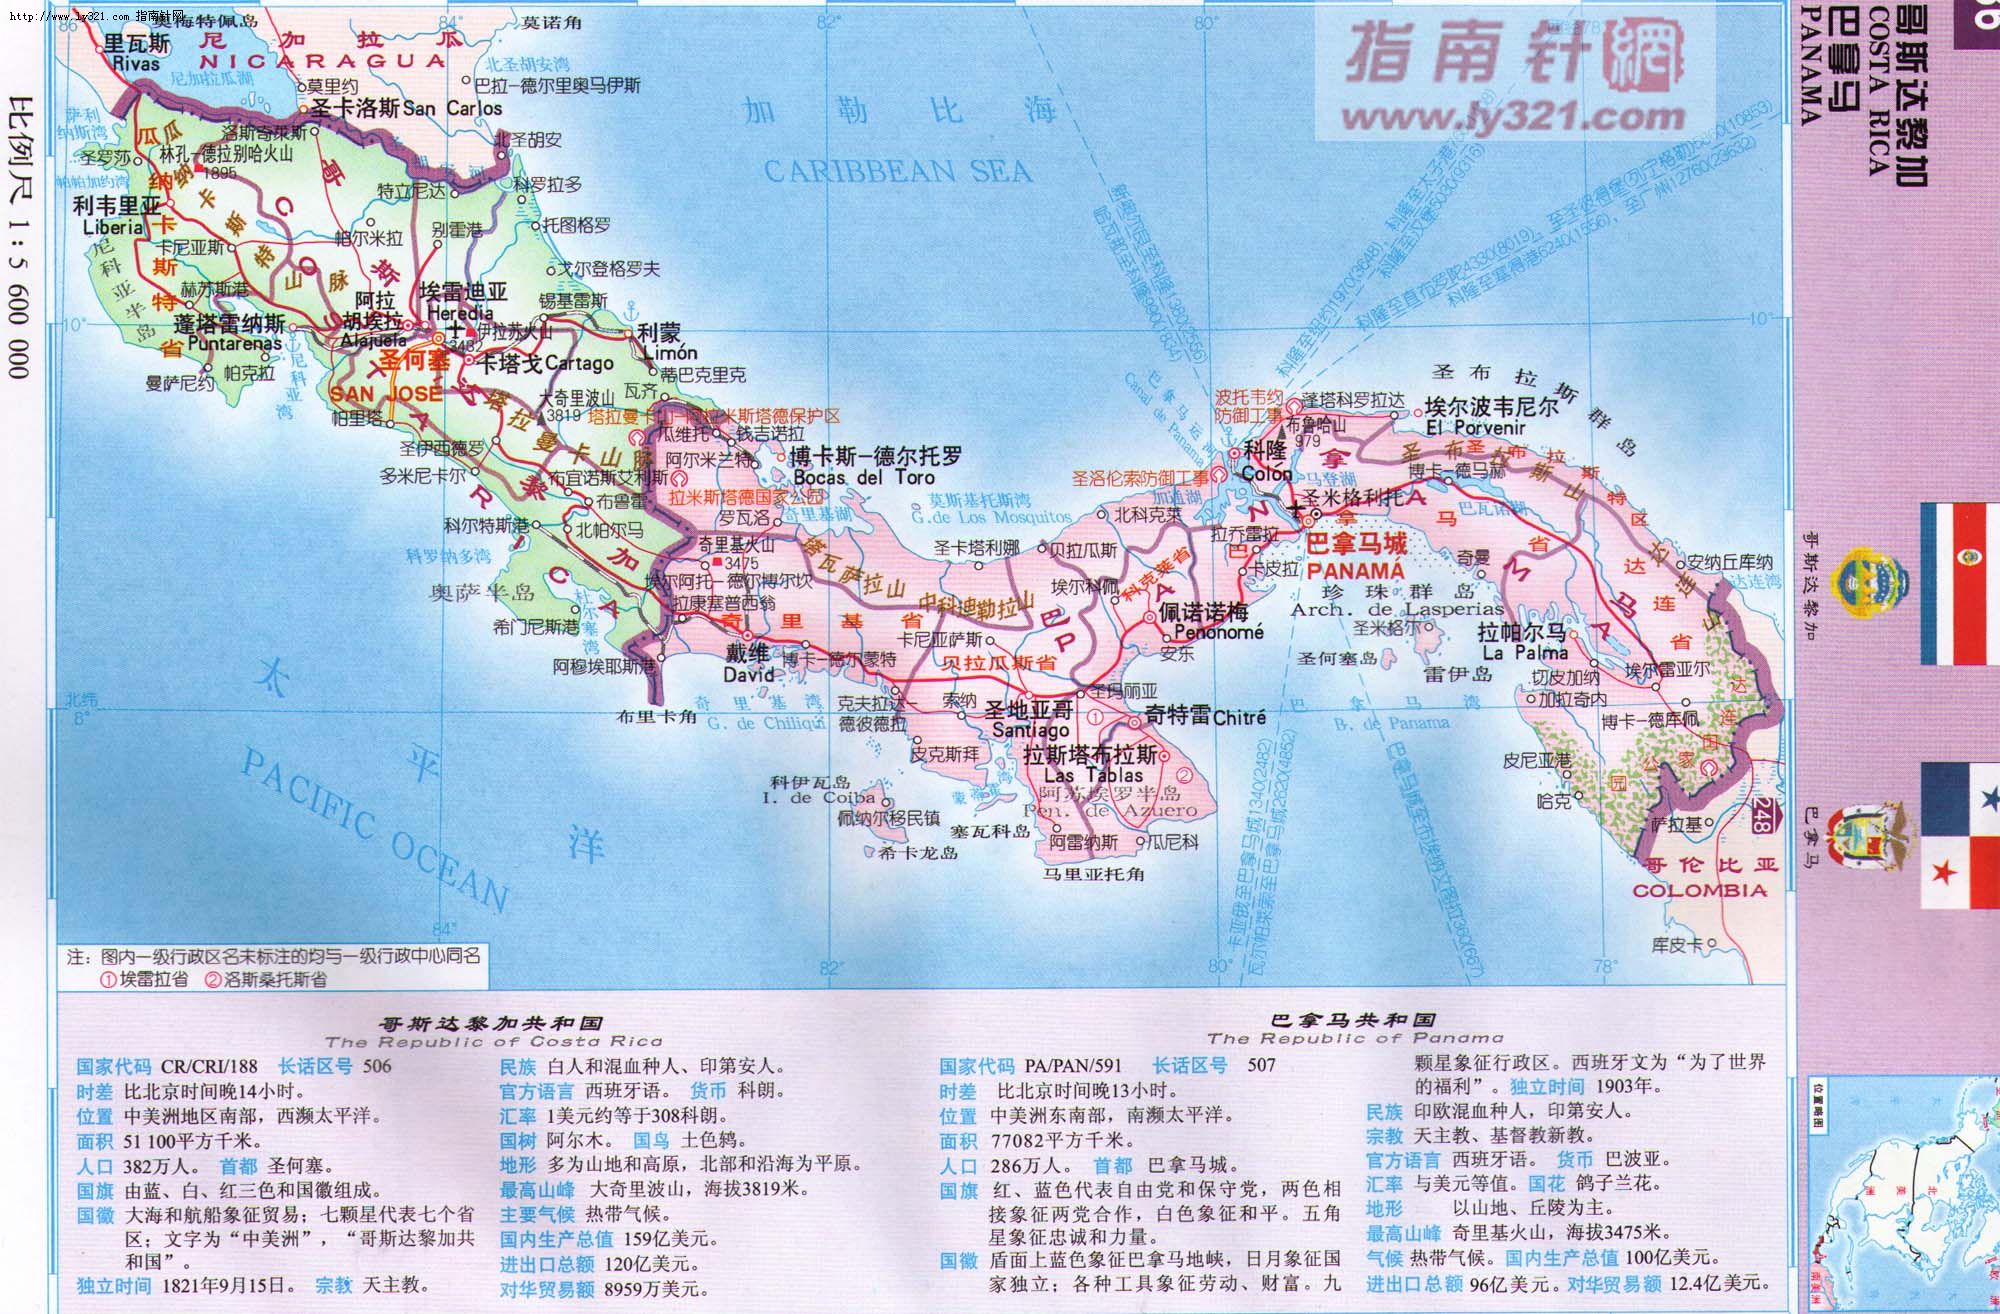 世界地圖-巴拿馬.jpg